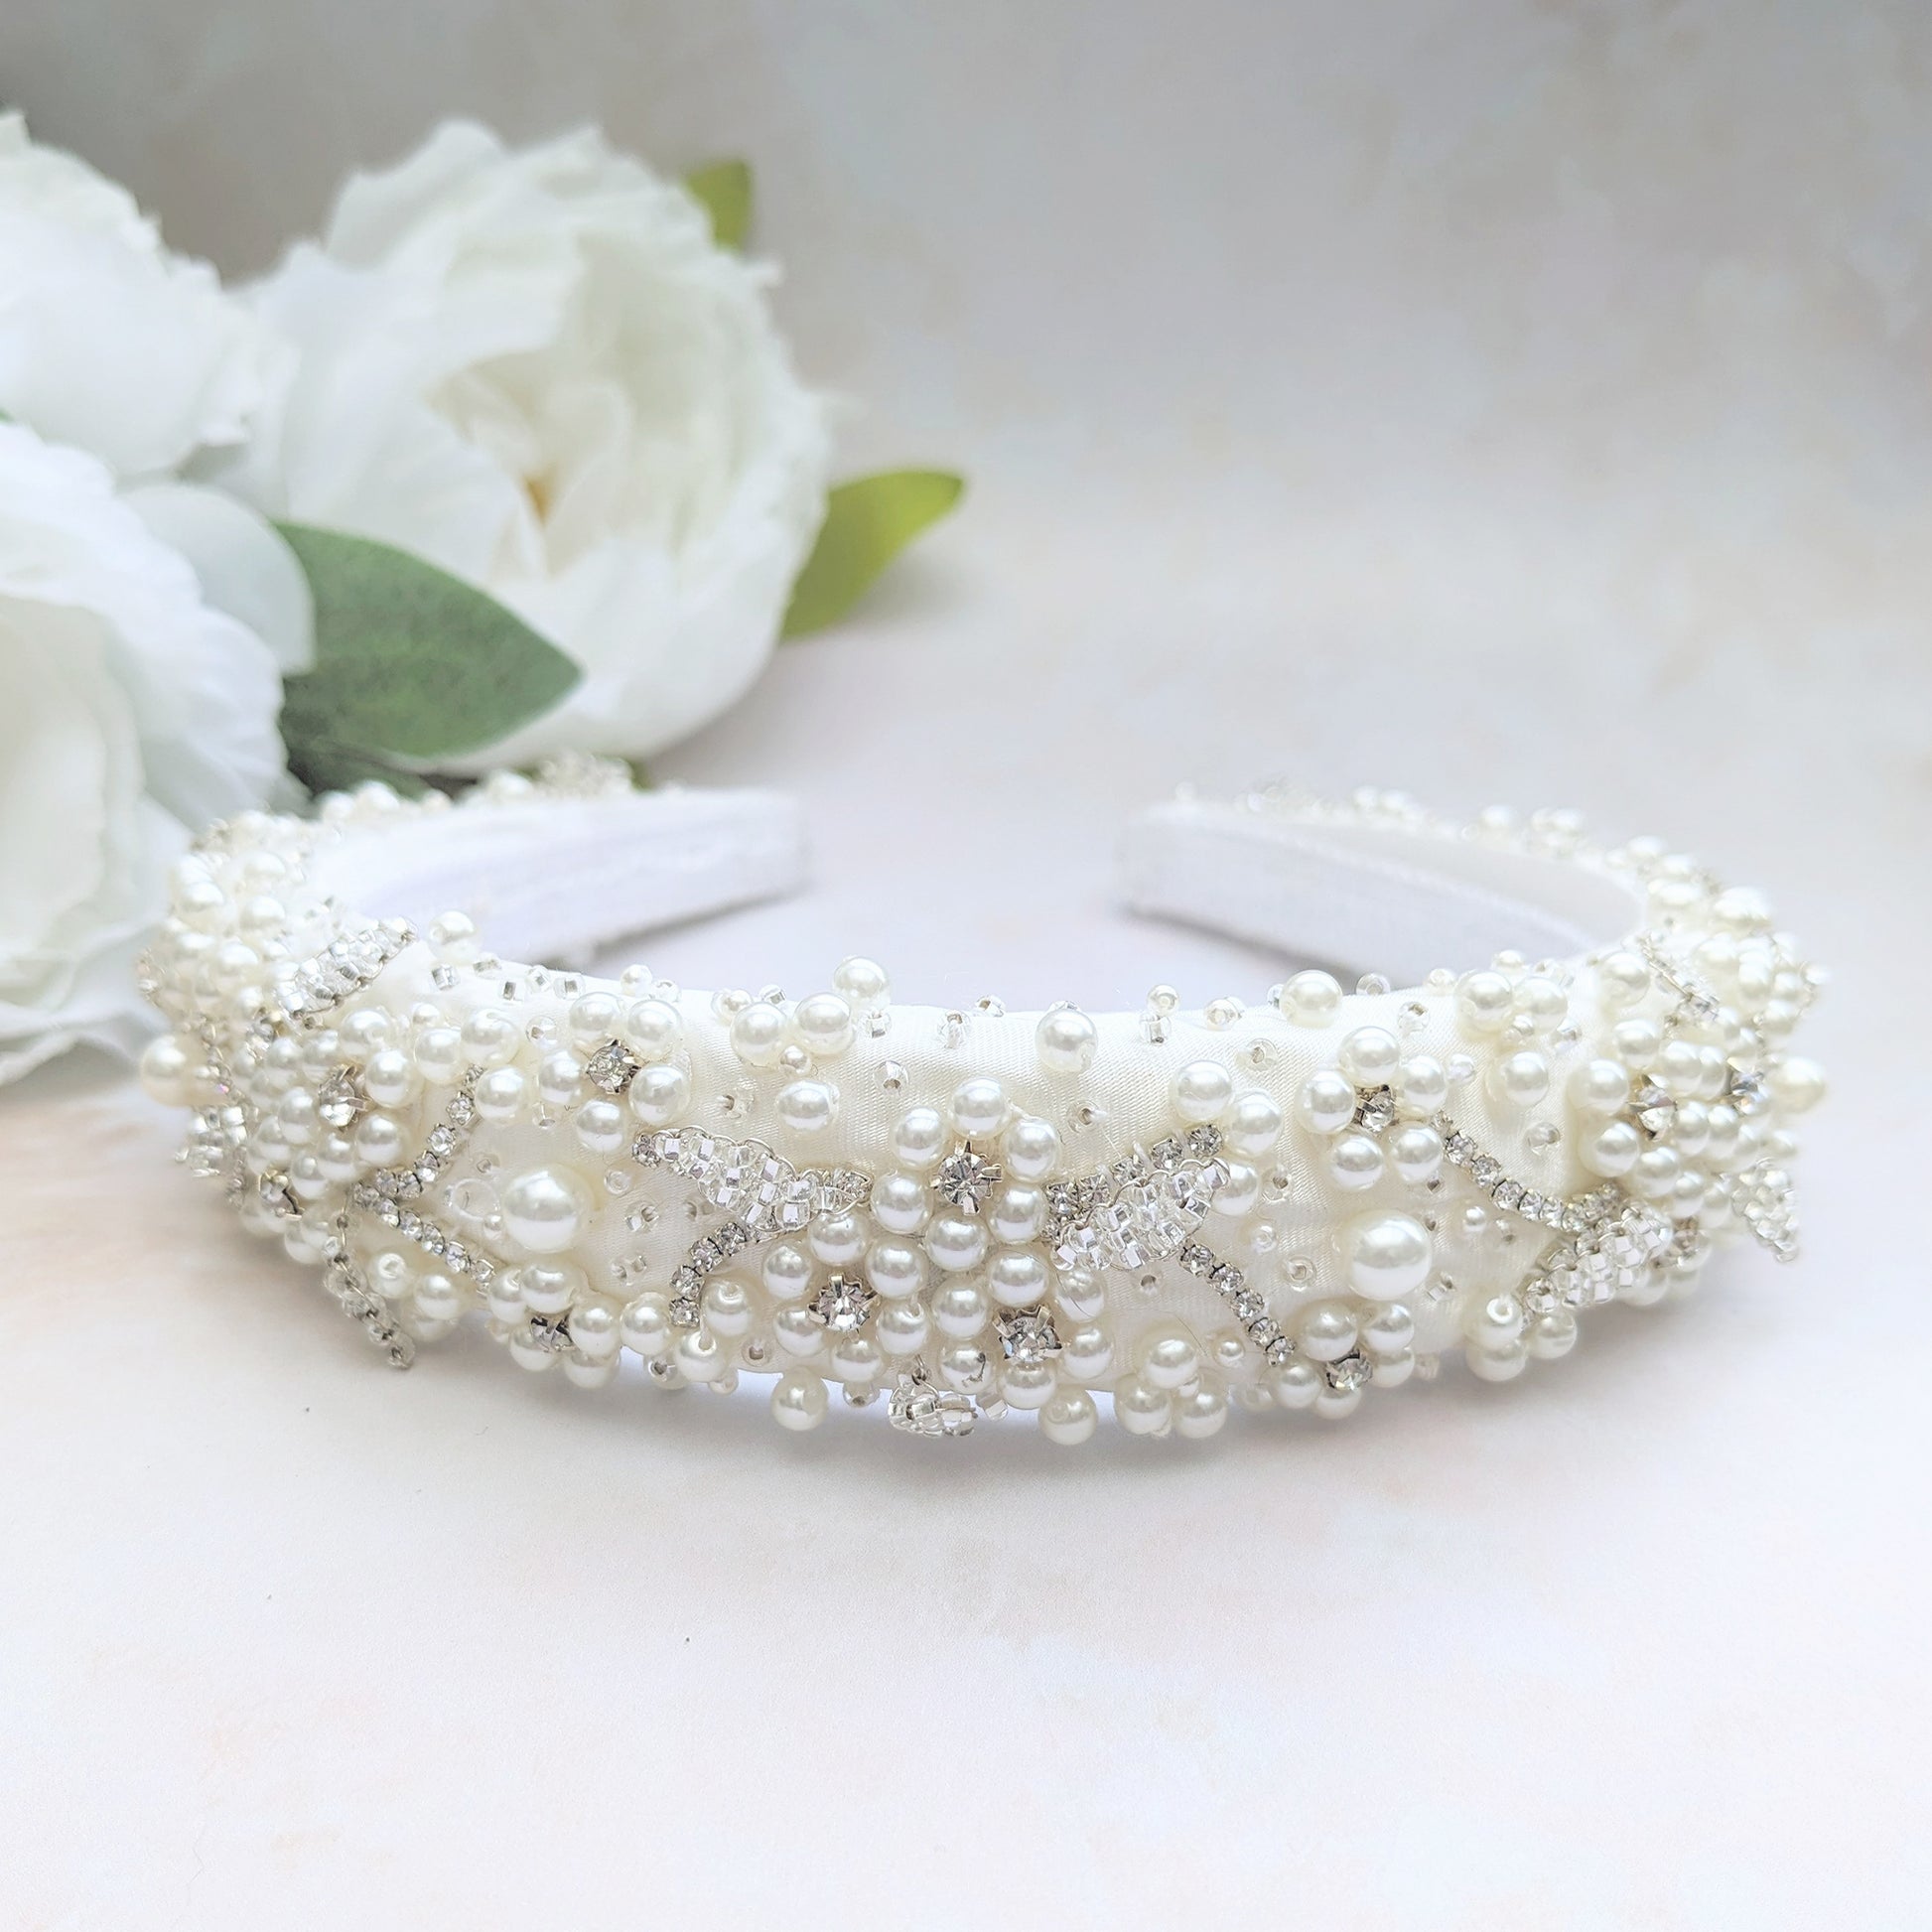 Floral bridal headband for Weddings - Susie Warner - 